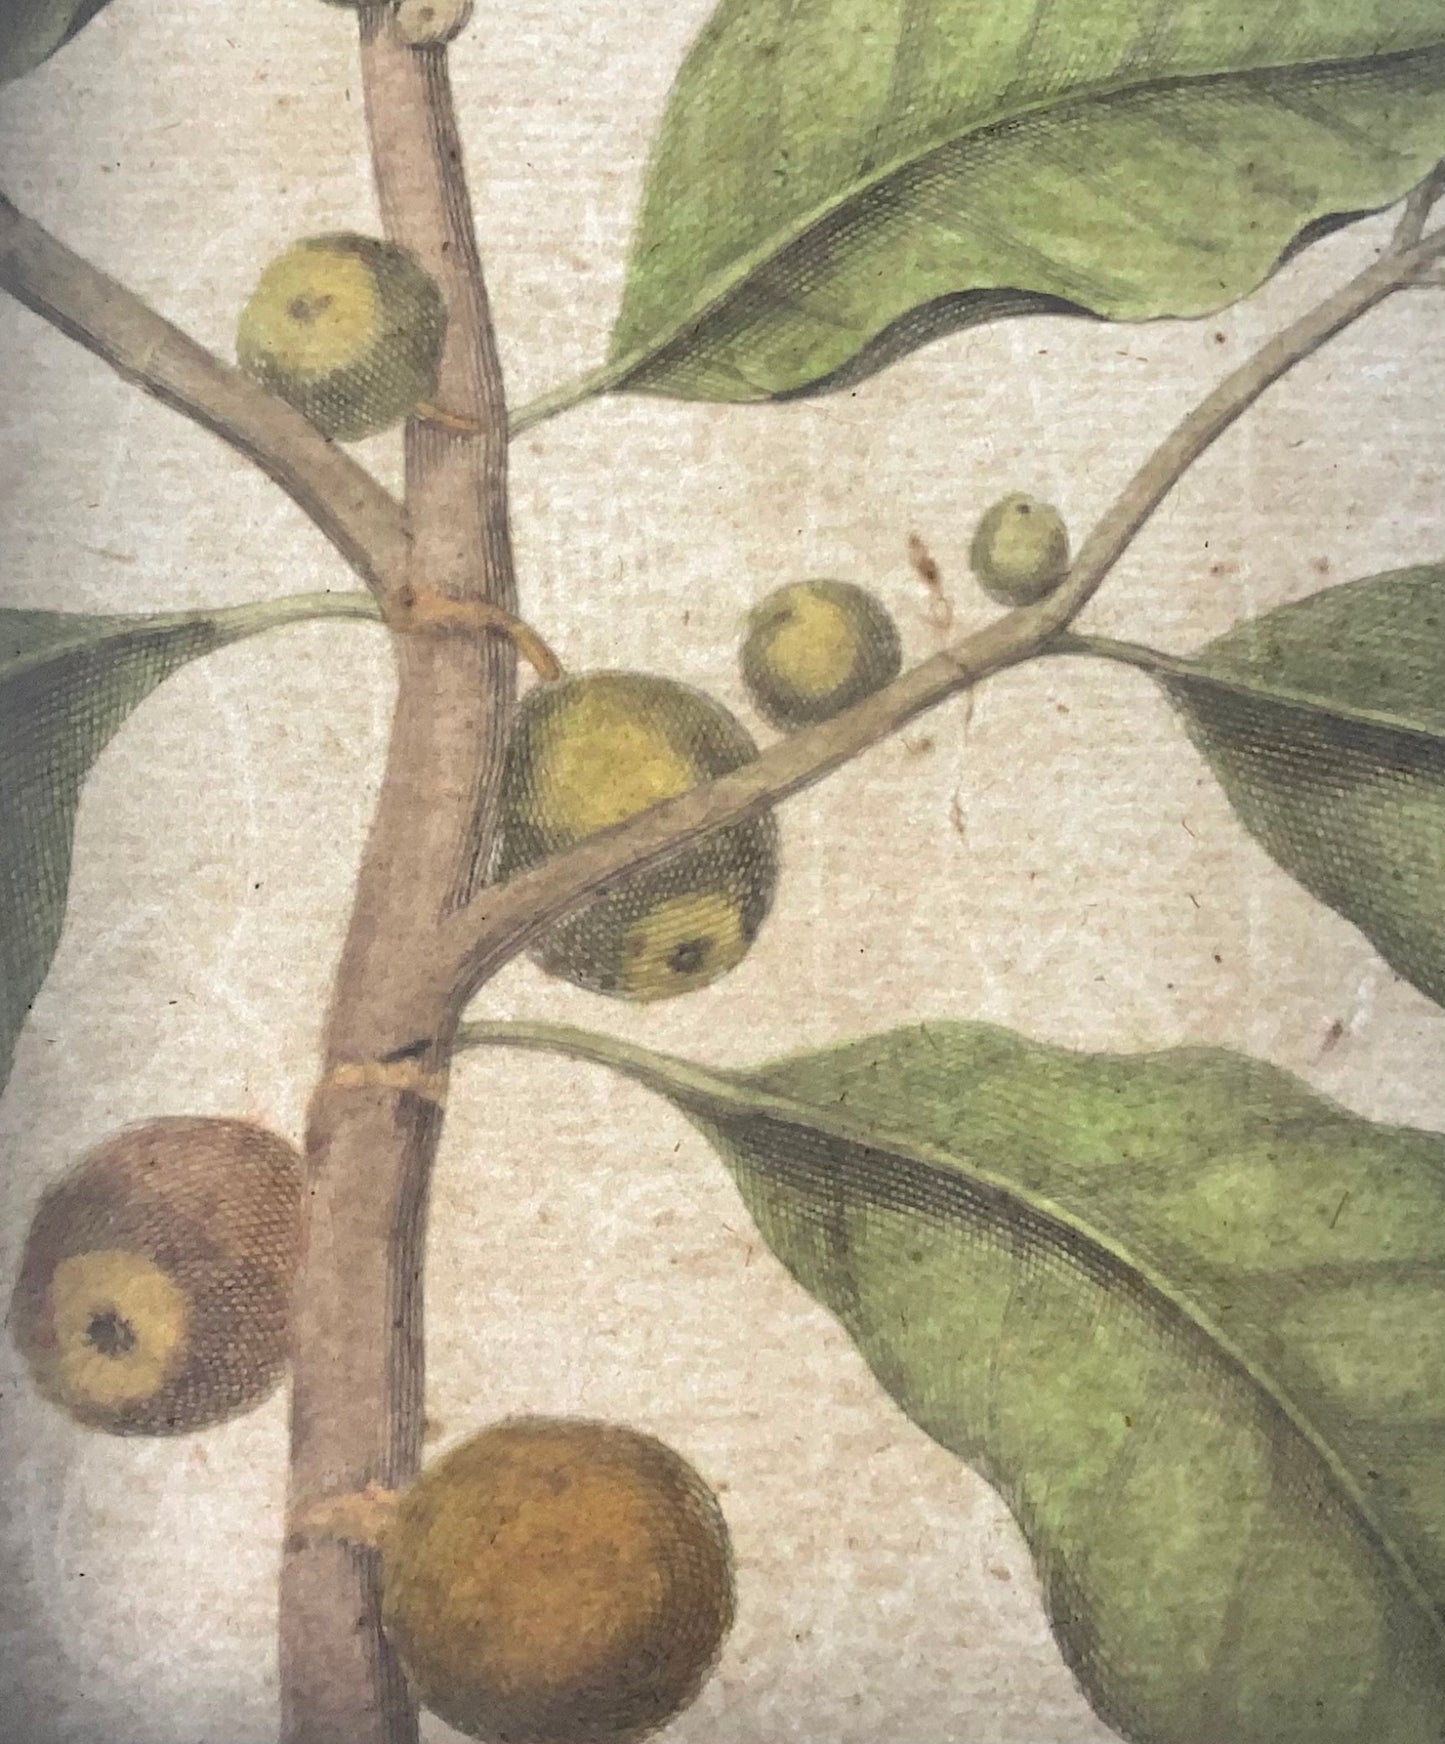 1741 Fico, frutta, Rumpf, Herbarium Amboinense, Indonesia, colore a mano, folio